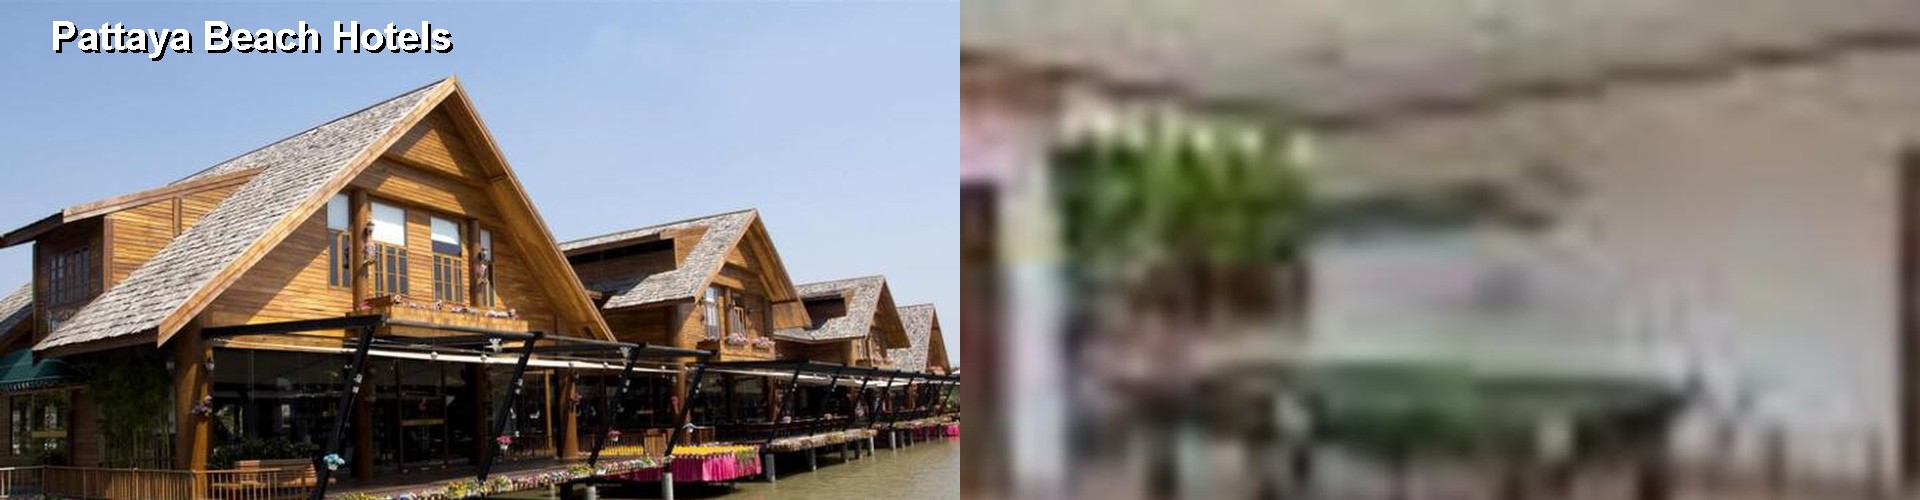 5 Best Hotels near Pattaya Beach